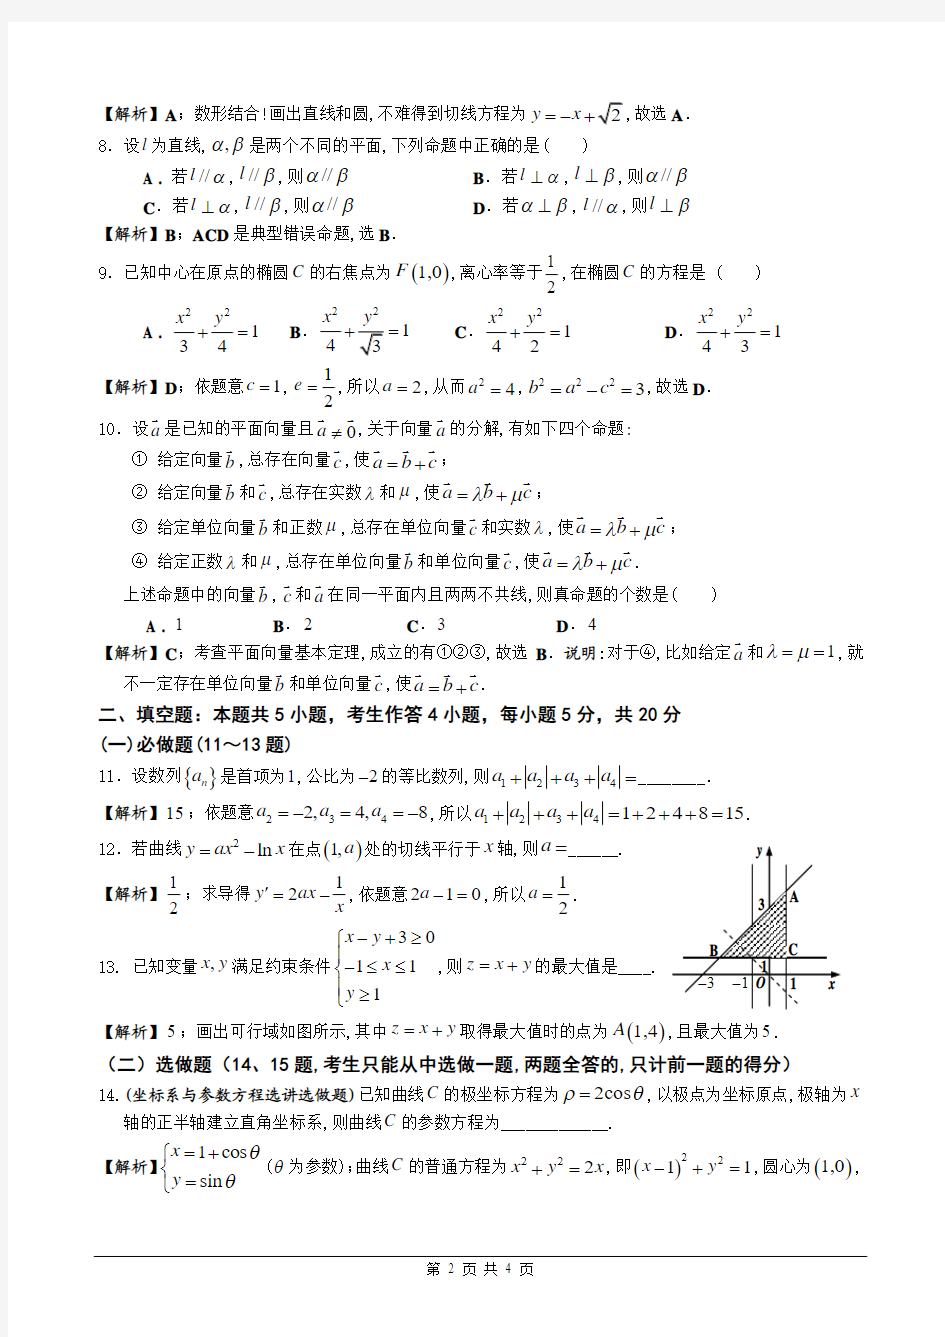 2013年广东高考文科数学(全解析)逐题详解